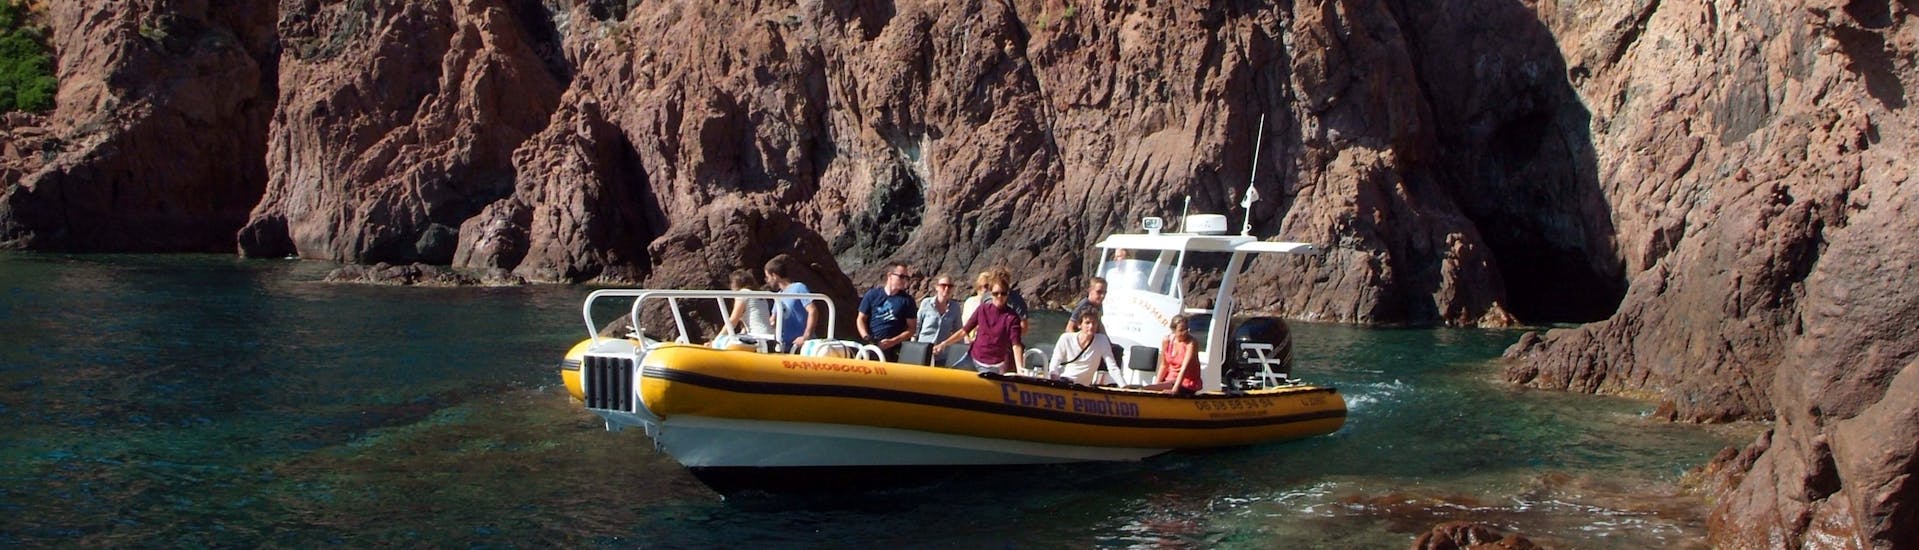 La barca vicino alle formazioni rocciose durante la gita in barca alle Calanques di Piana e Capo Rosso da Porto con Corse Émotion.